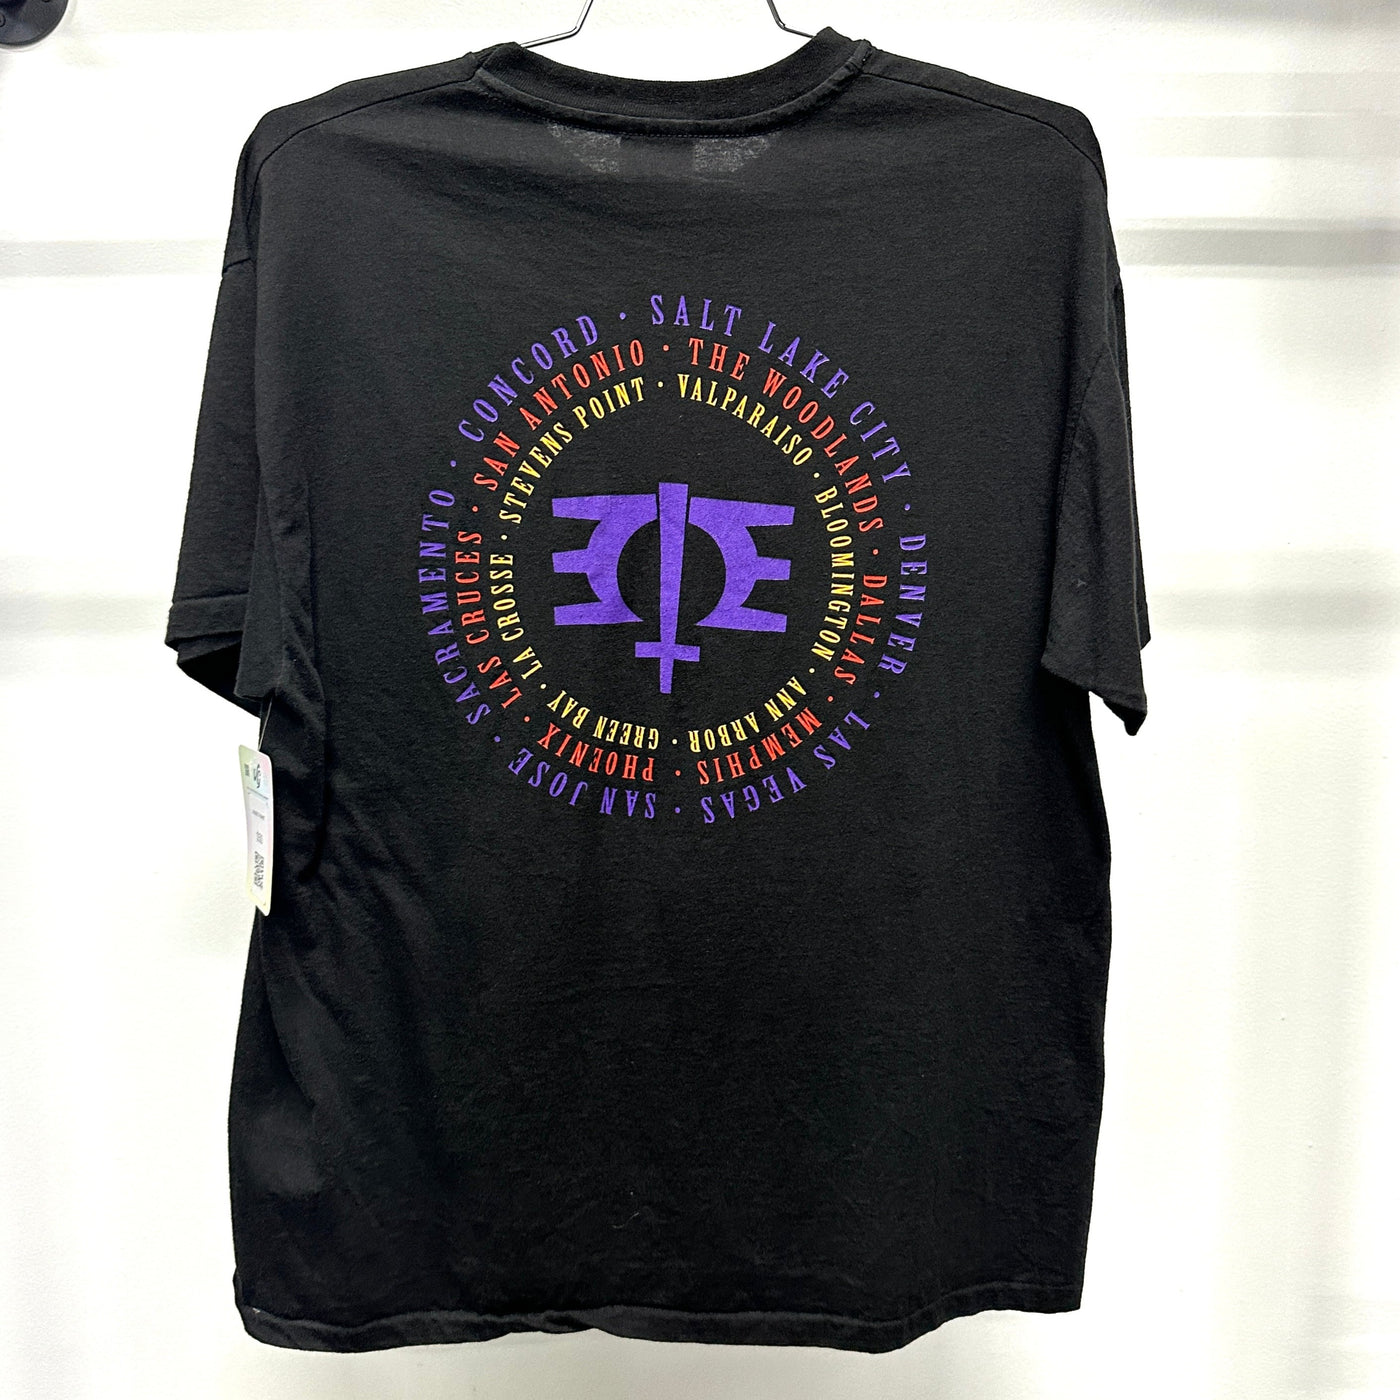 '93 Melissa Etheridge Concert Tour Black Music T-shirt sz XL